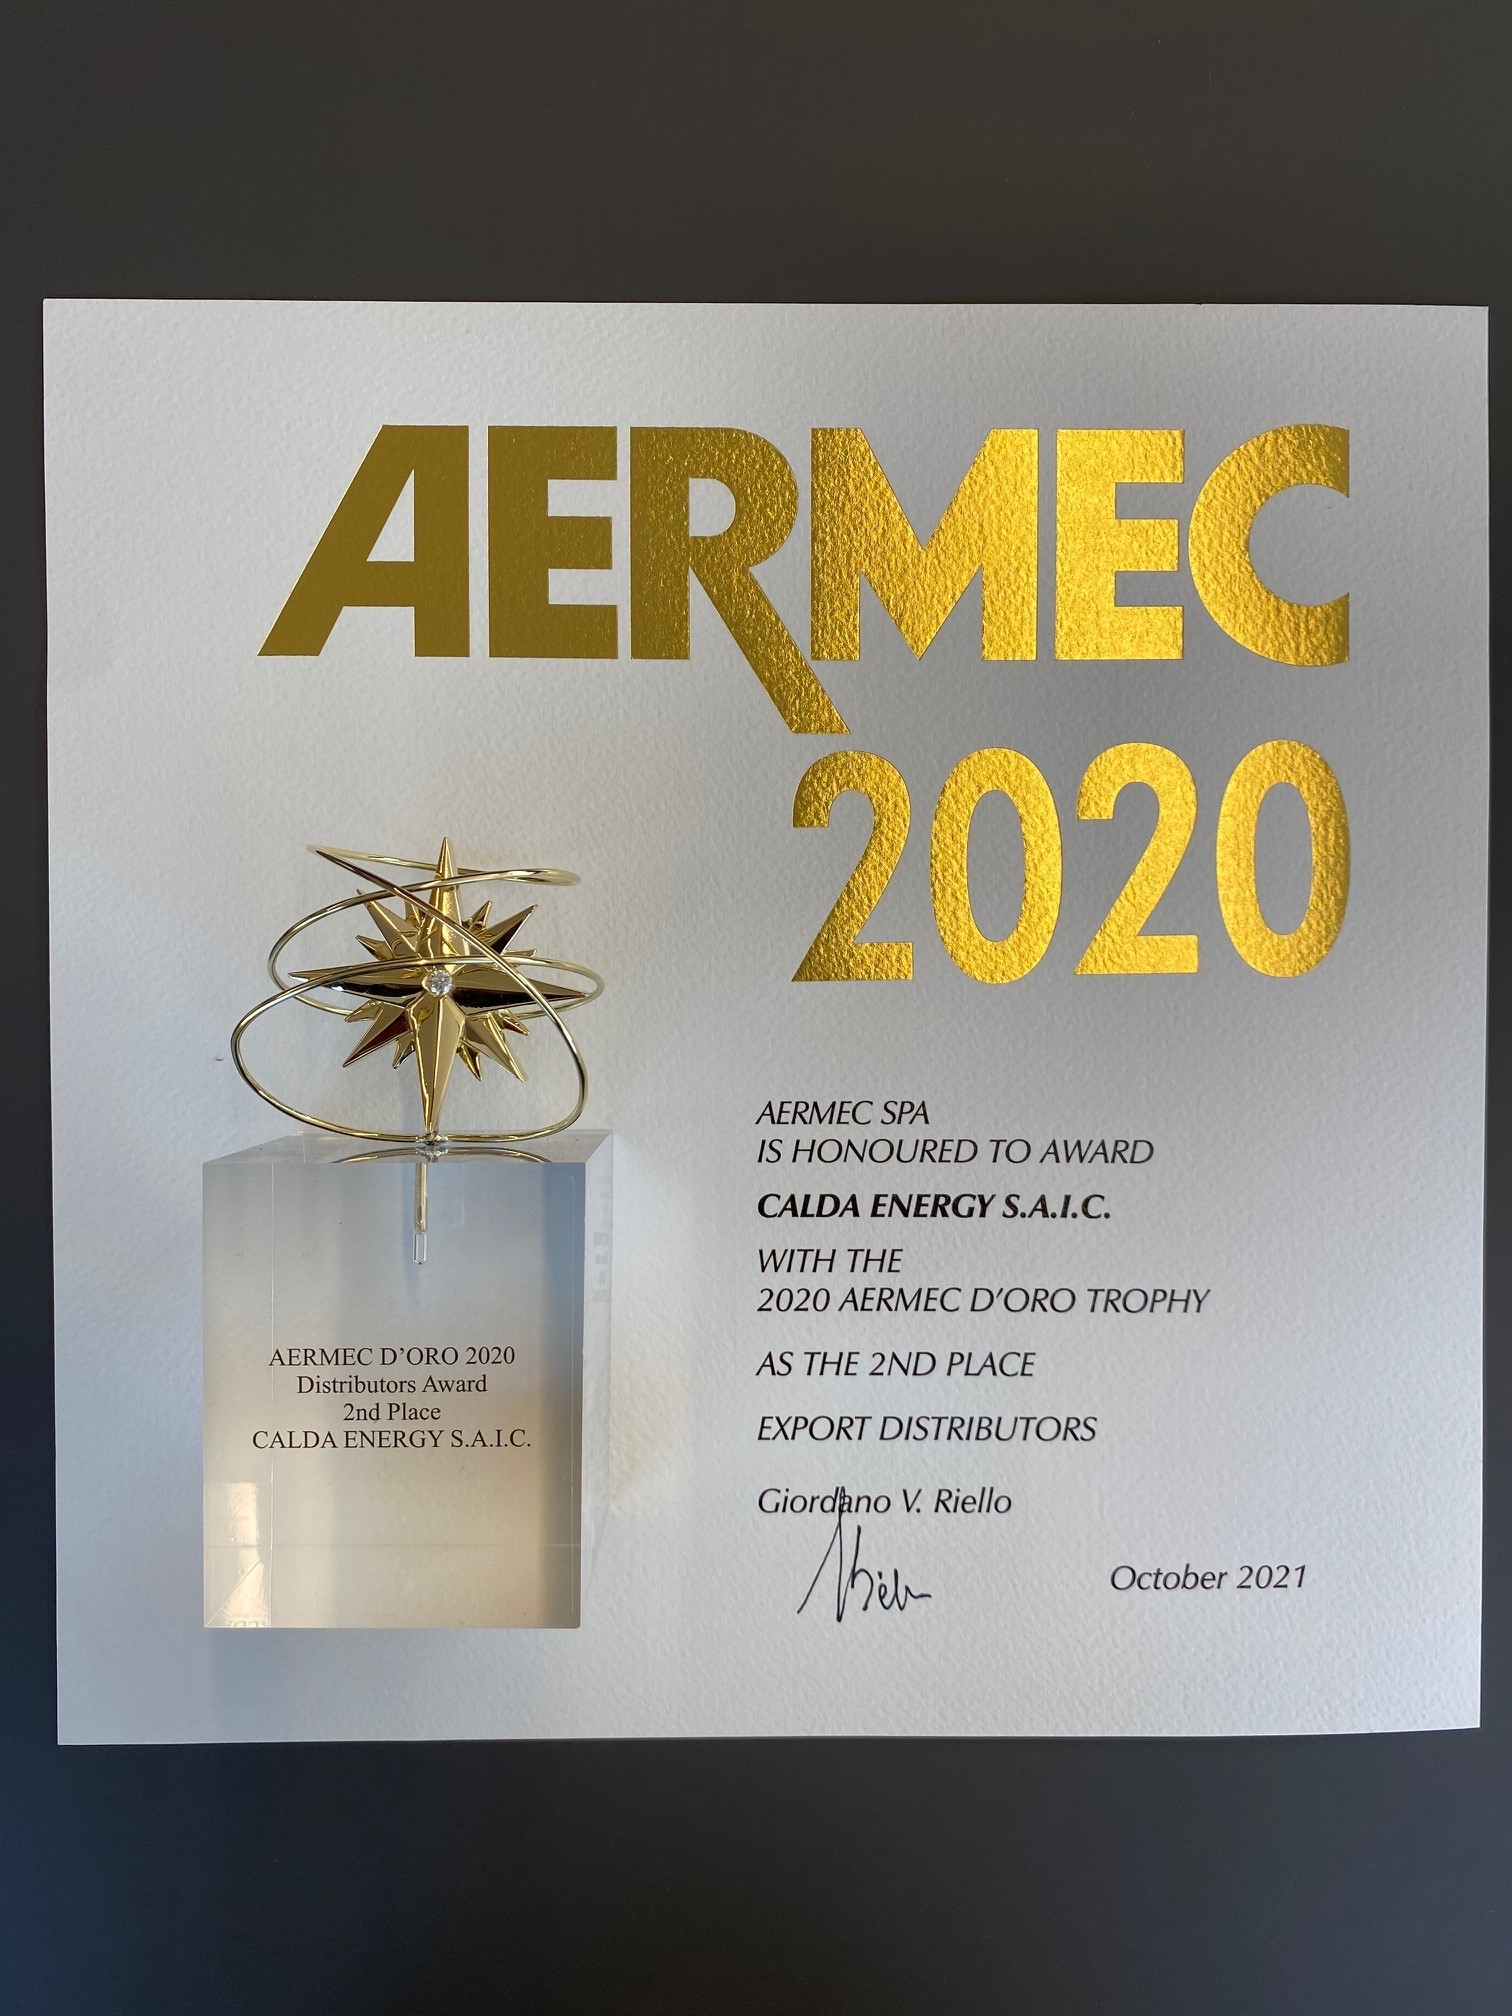 46η ΤΕΛΕΤΗ ΒΡΑΒΕΥΣΗΣ AERMEC D’ORO 2020